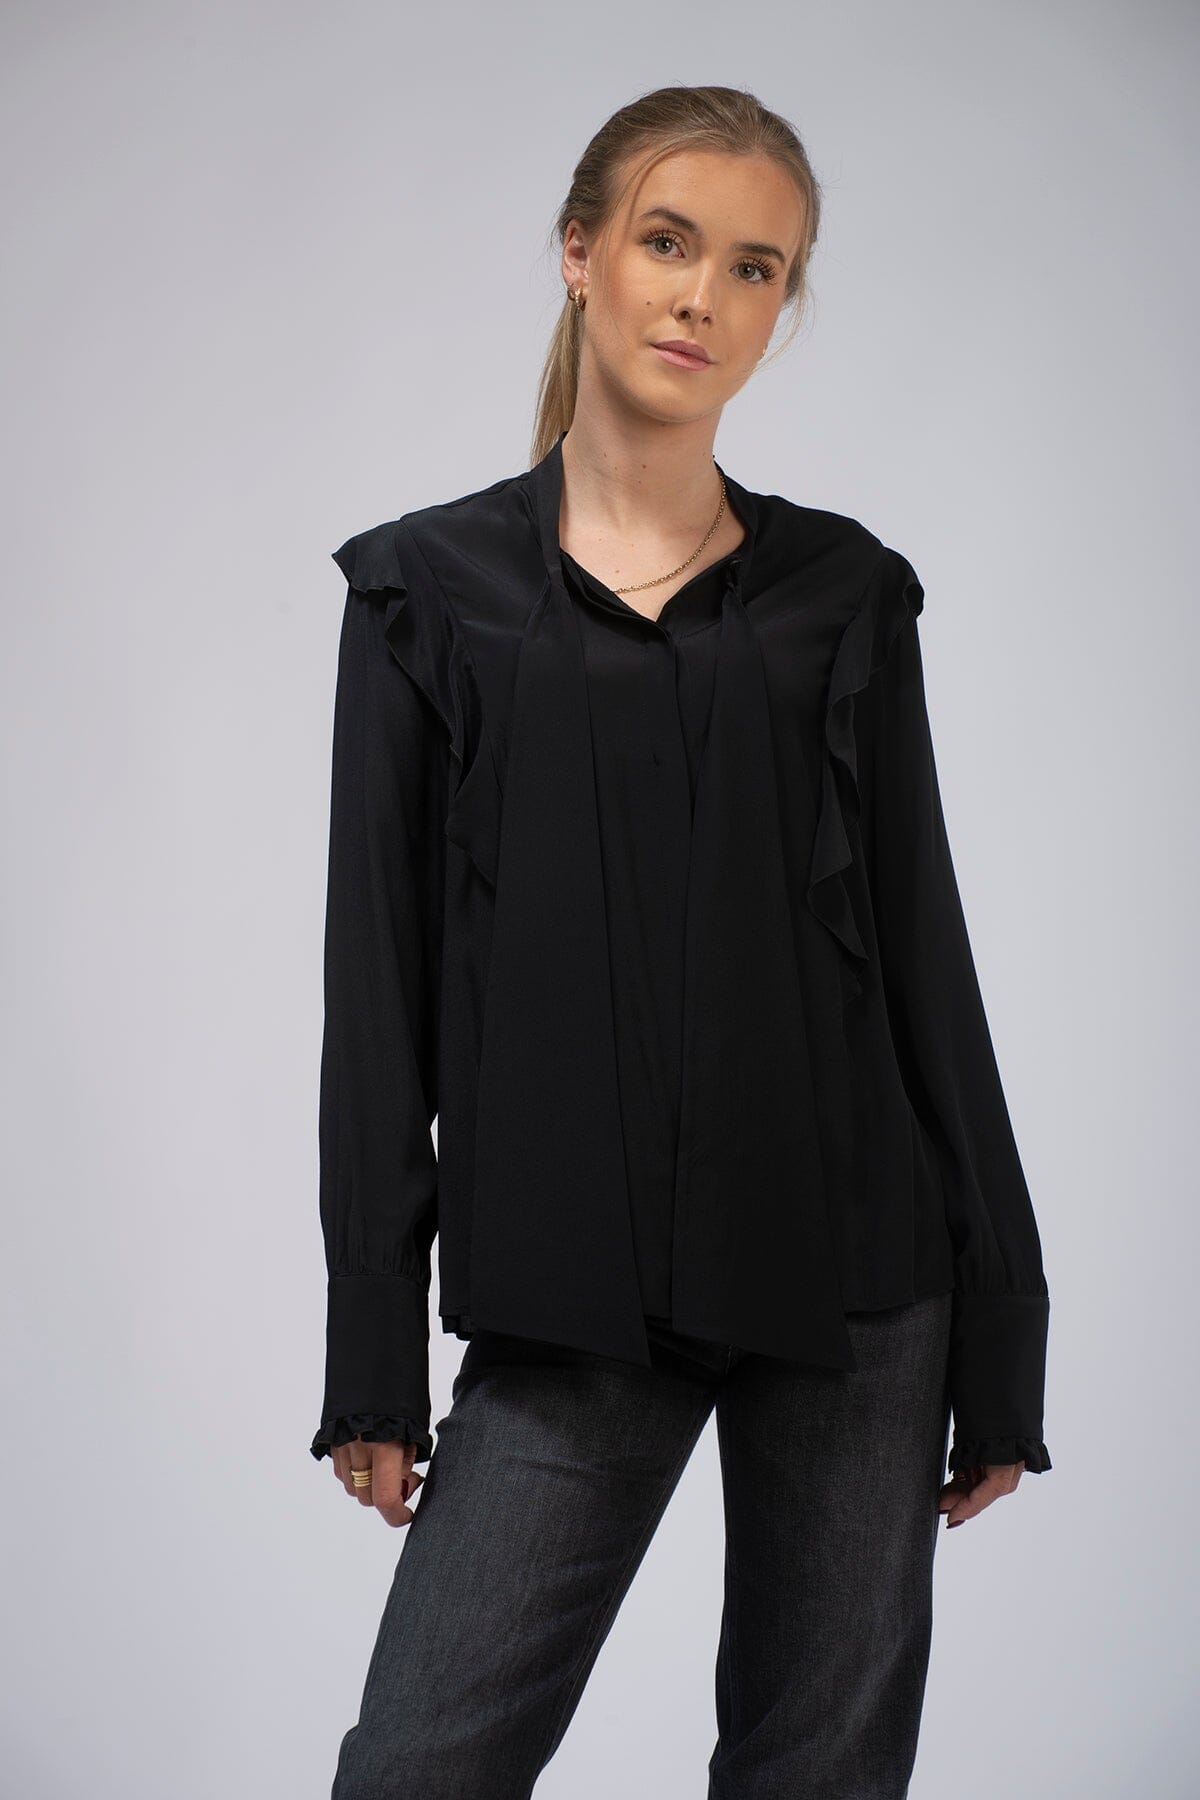 Kaliko Romina Shirt Black